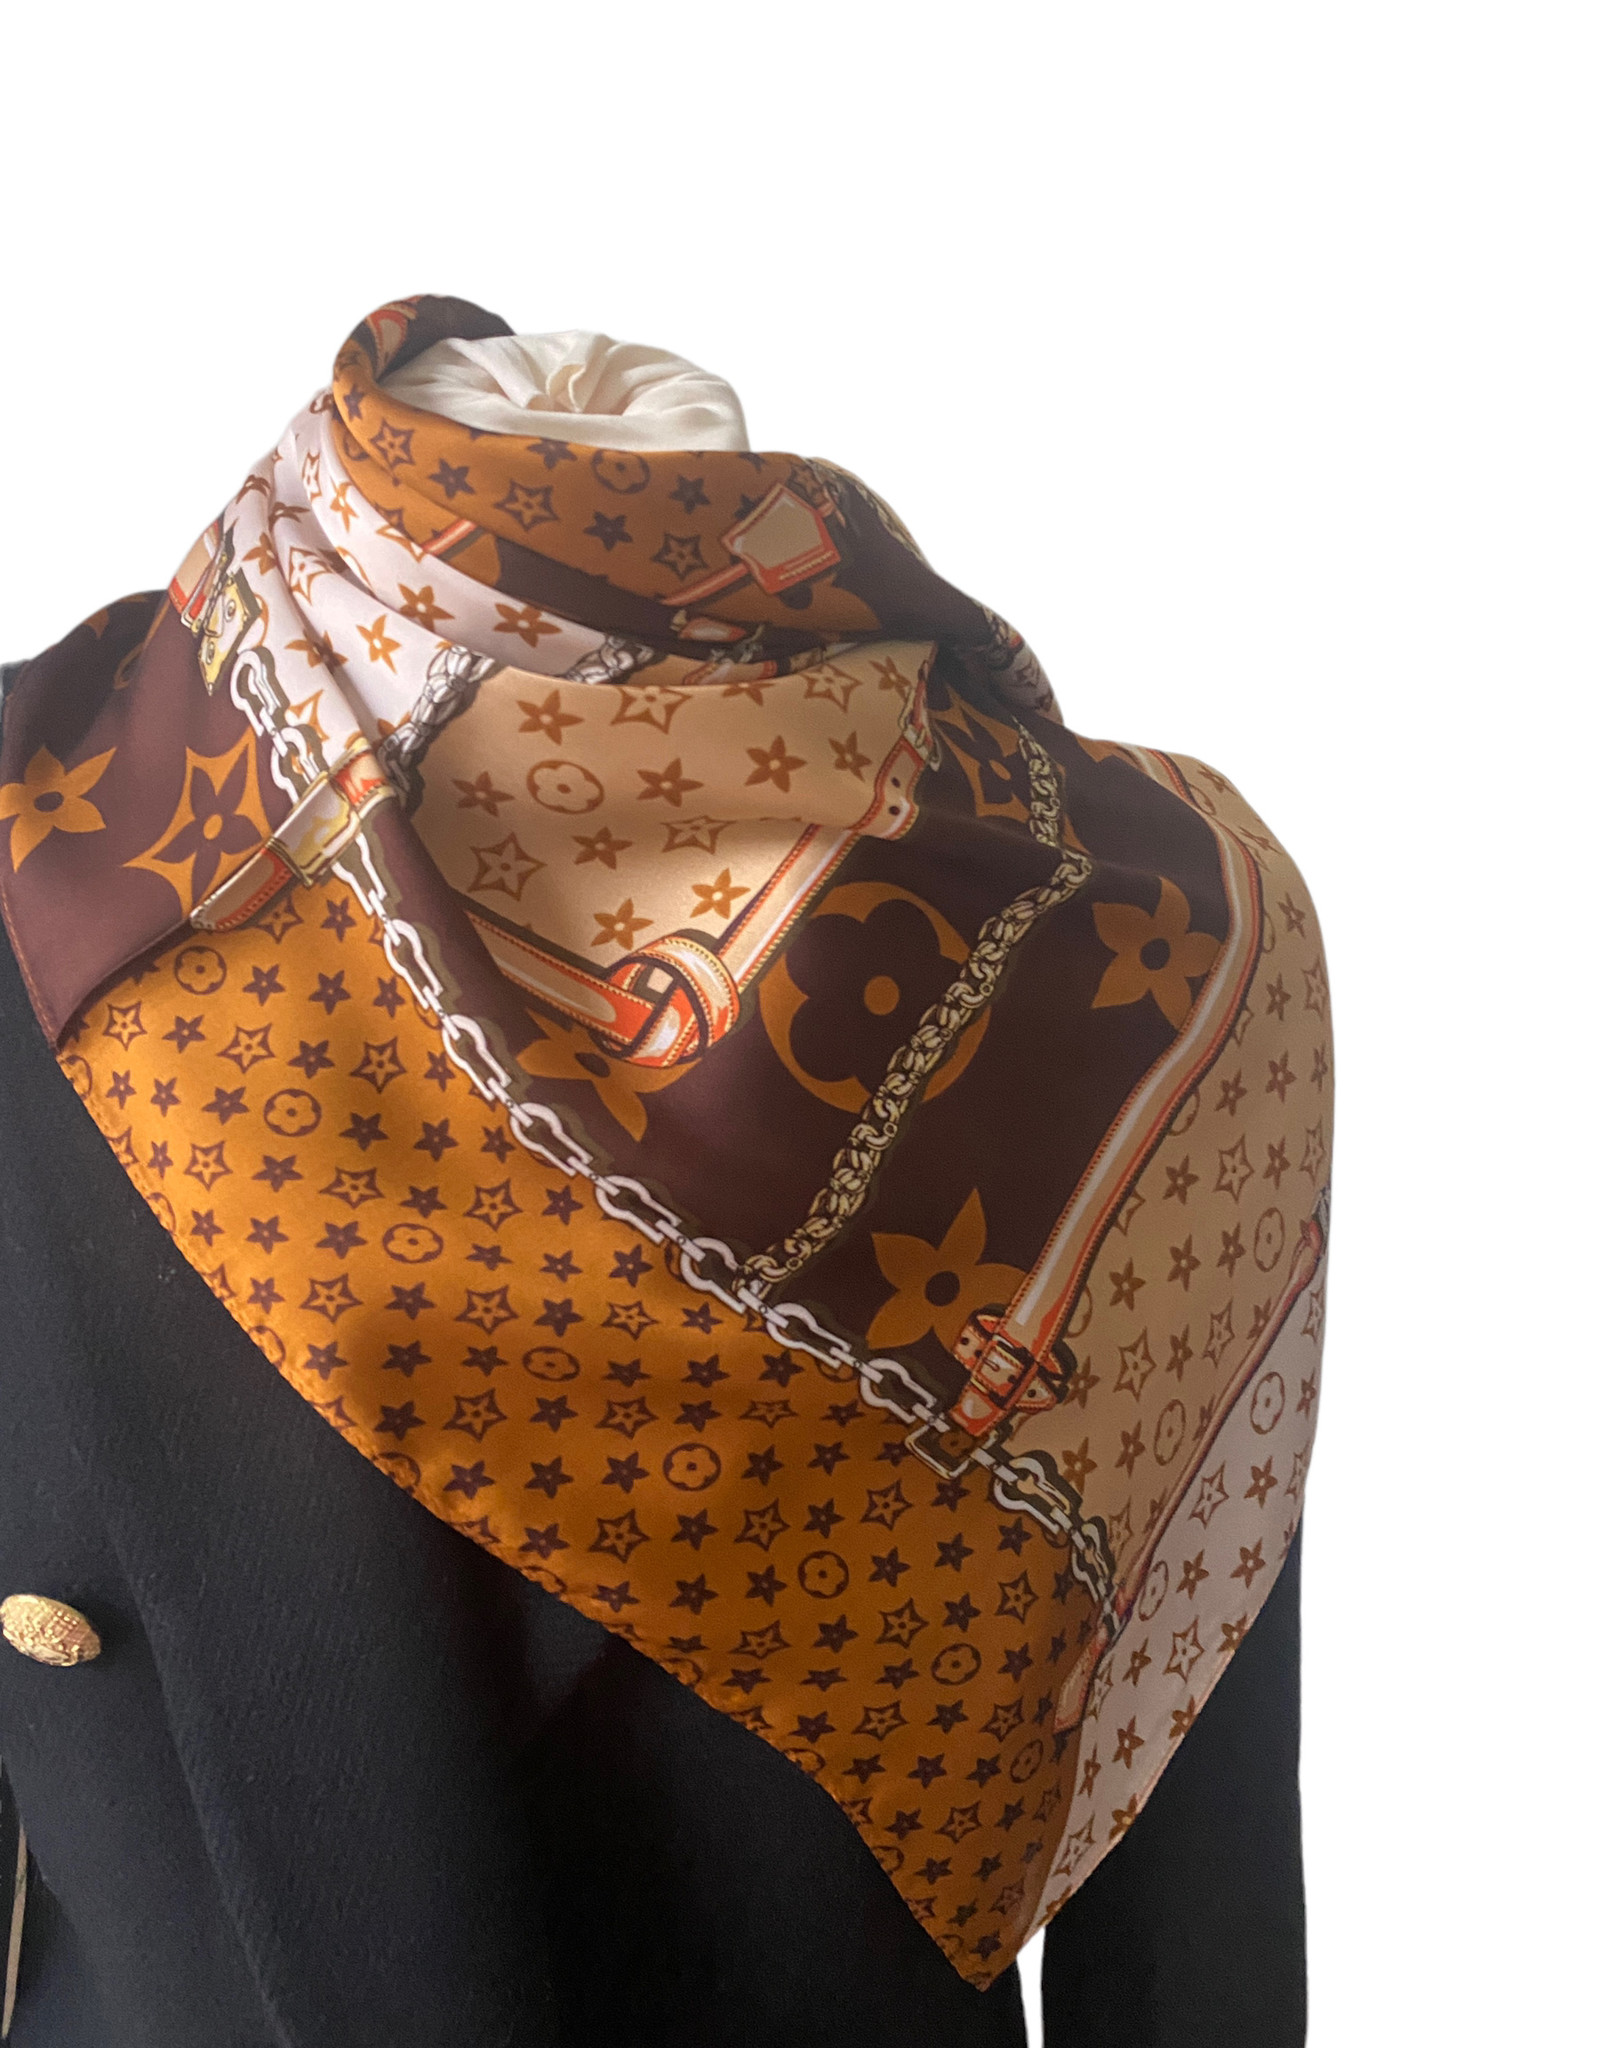 Vierkante santijnen sjaal met brand logo. Bruin/beige tinten met oranje